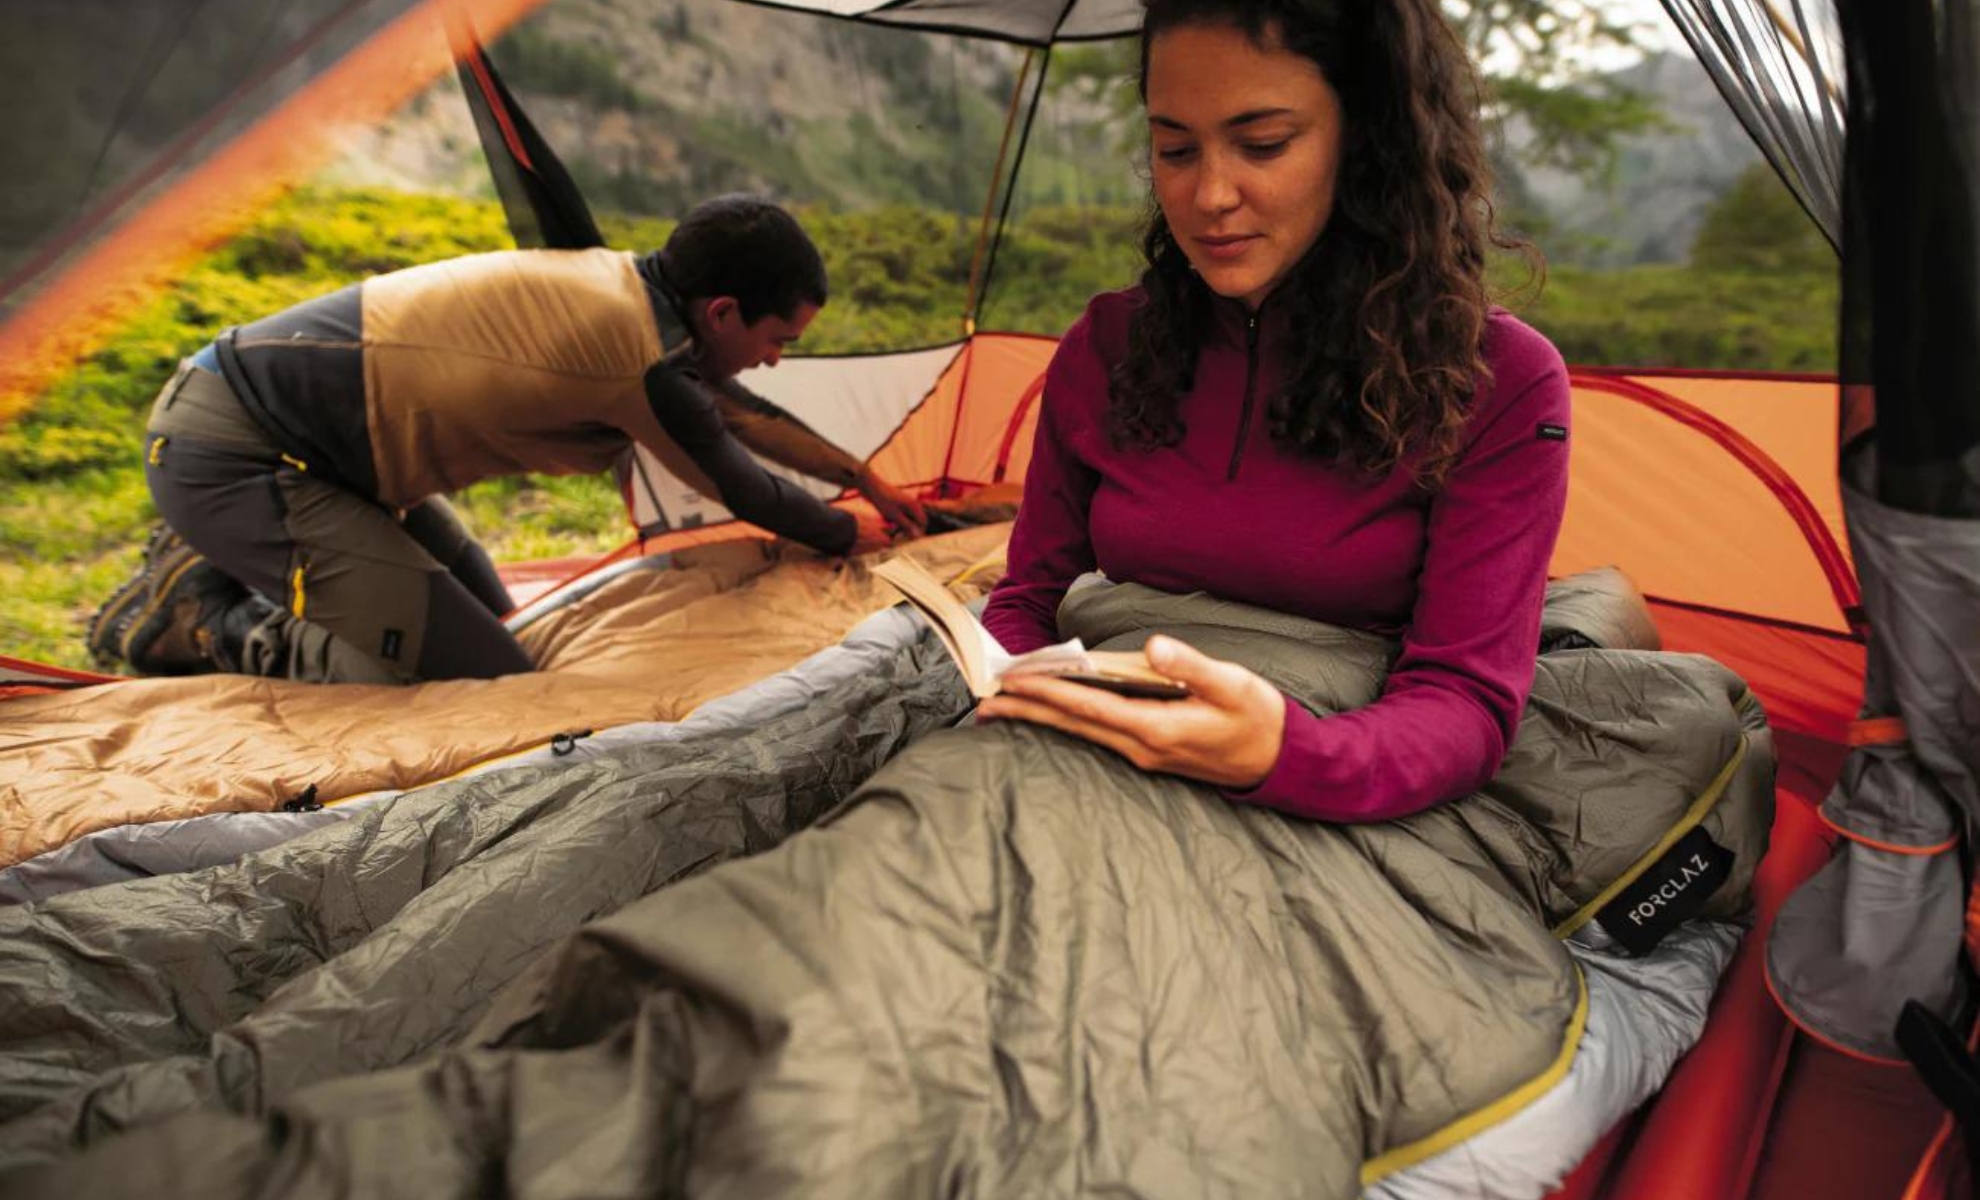 La couverture pour randonnées et campings